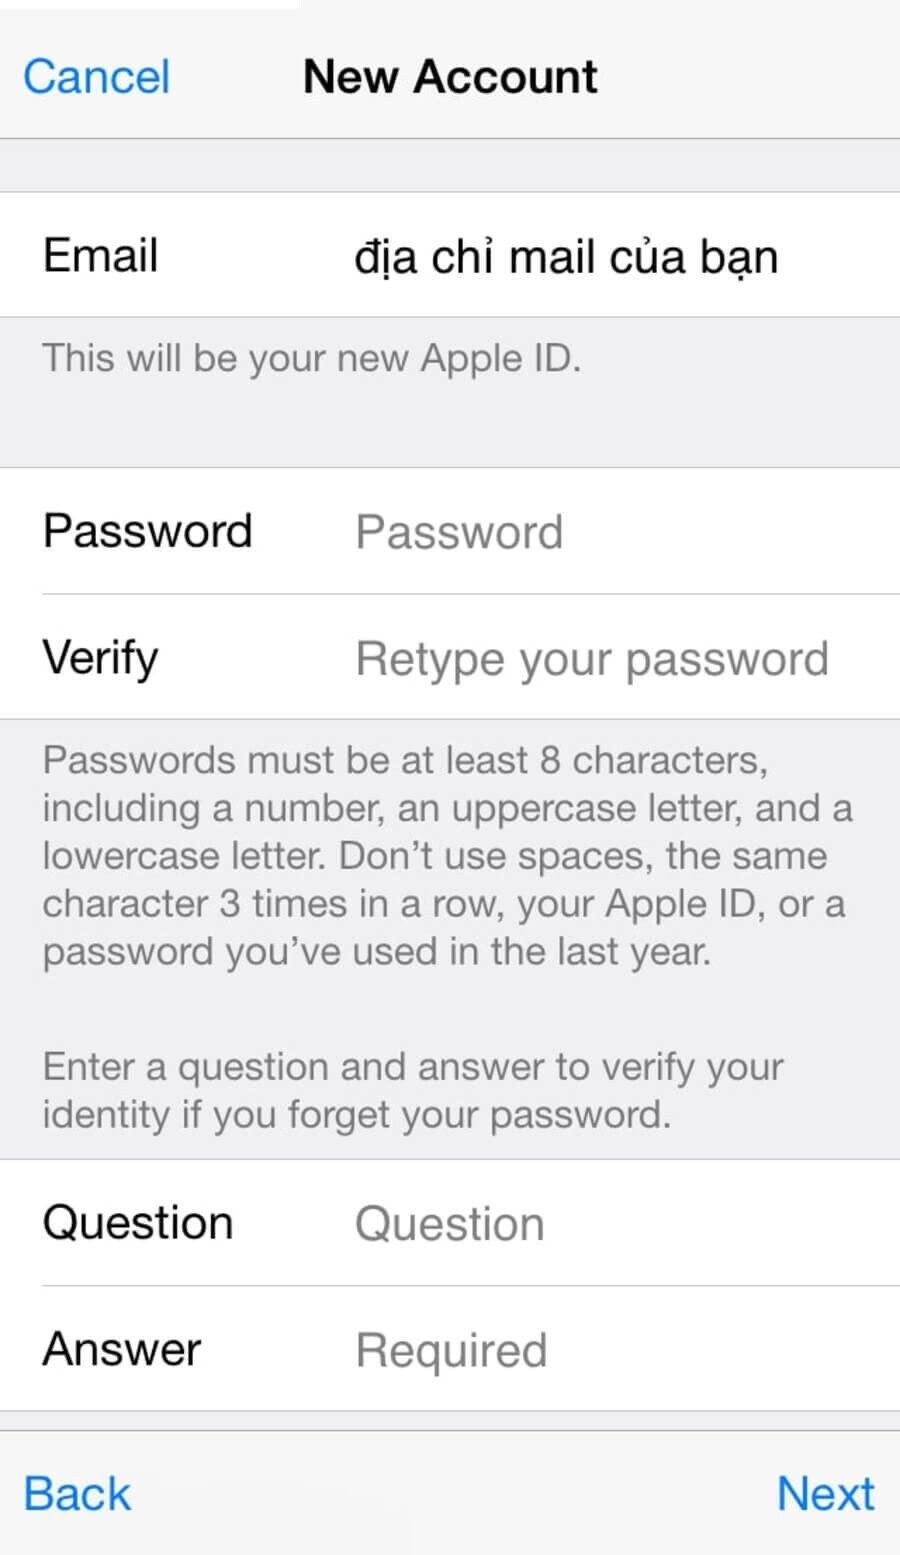 Hướng dẫn tạo tài khoản Apple ID và iCloud miễn phí không cần thẻ Visa. - Hình 11